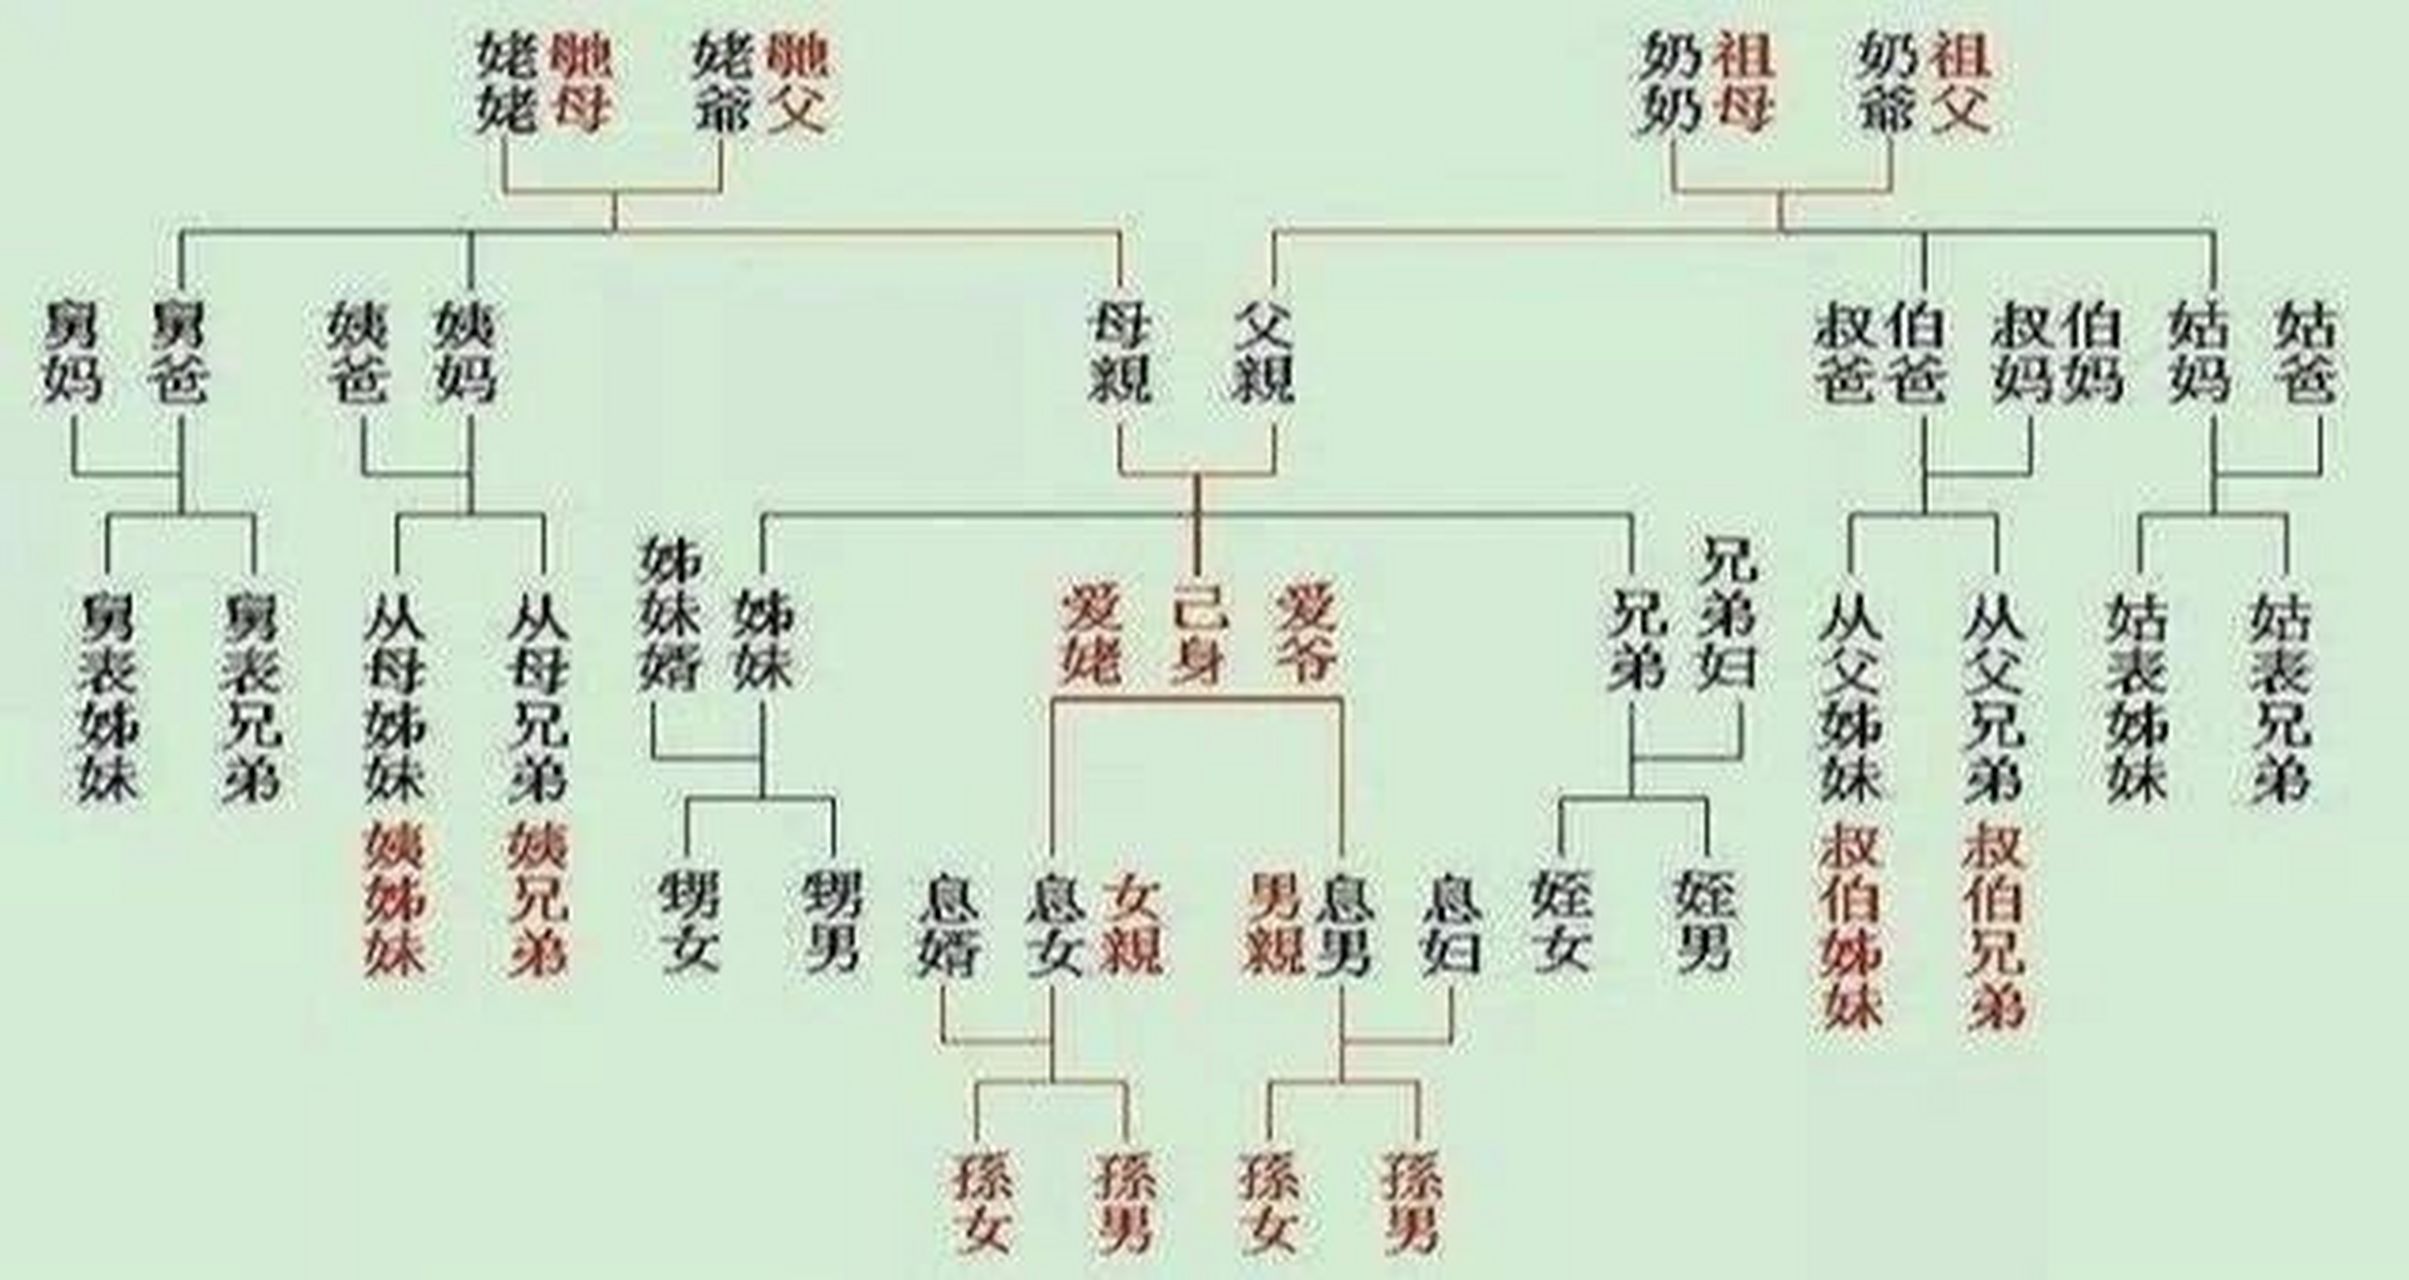 家谱是一种特殊的文献,就其内容而言,是中华文明史中具有平民特色的